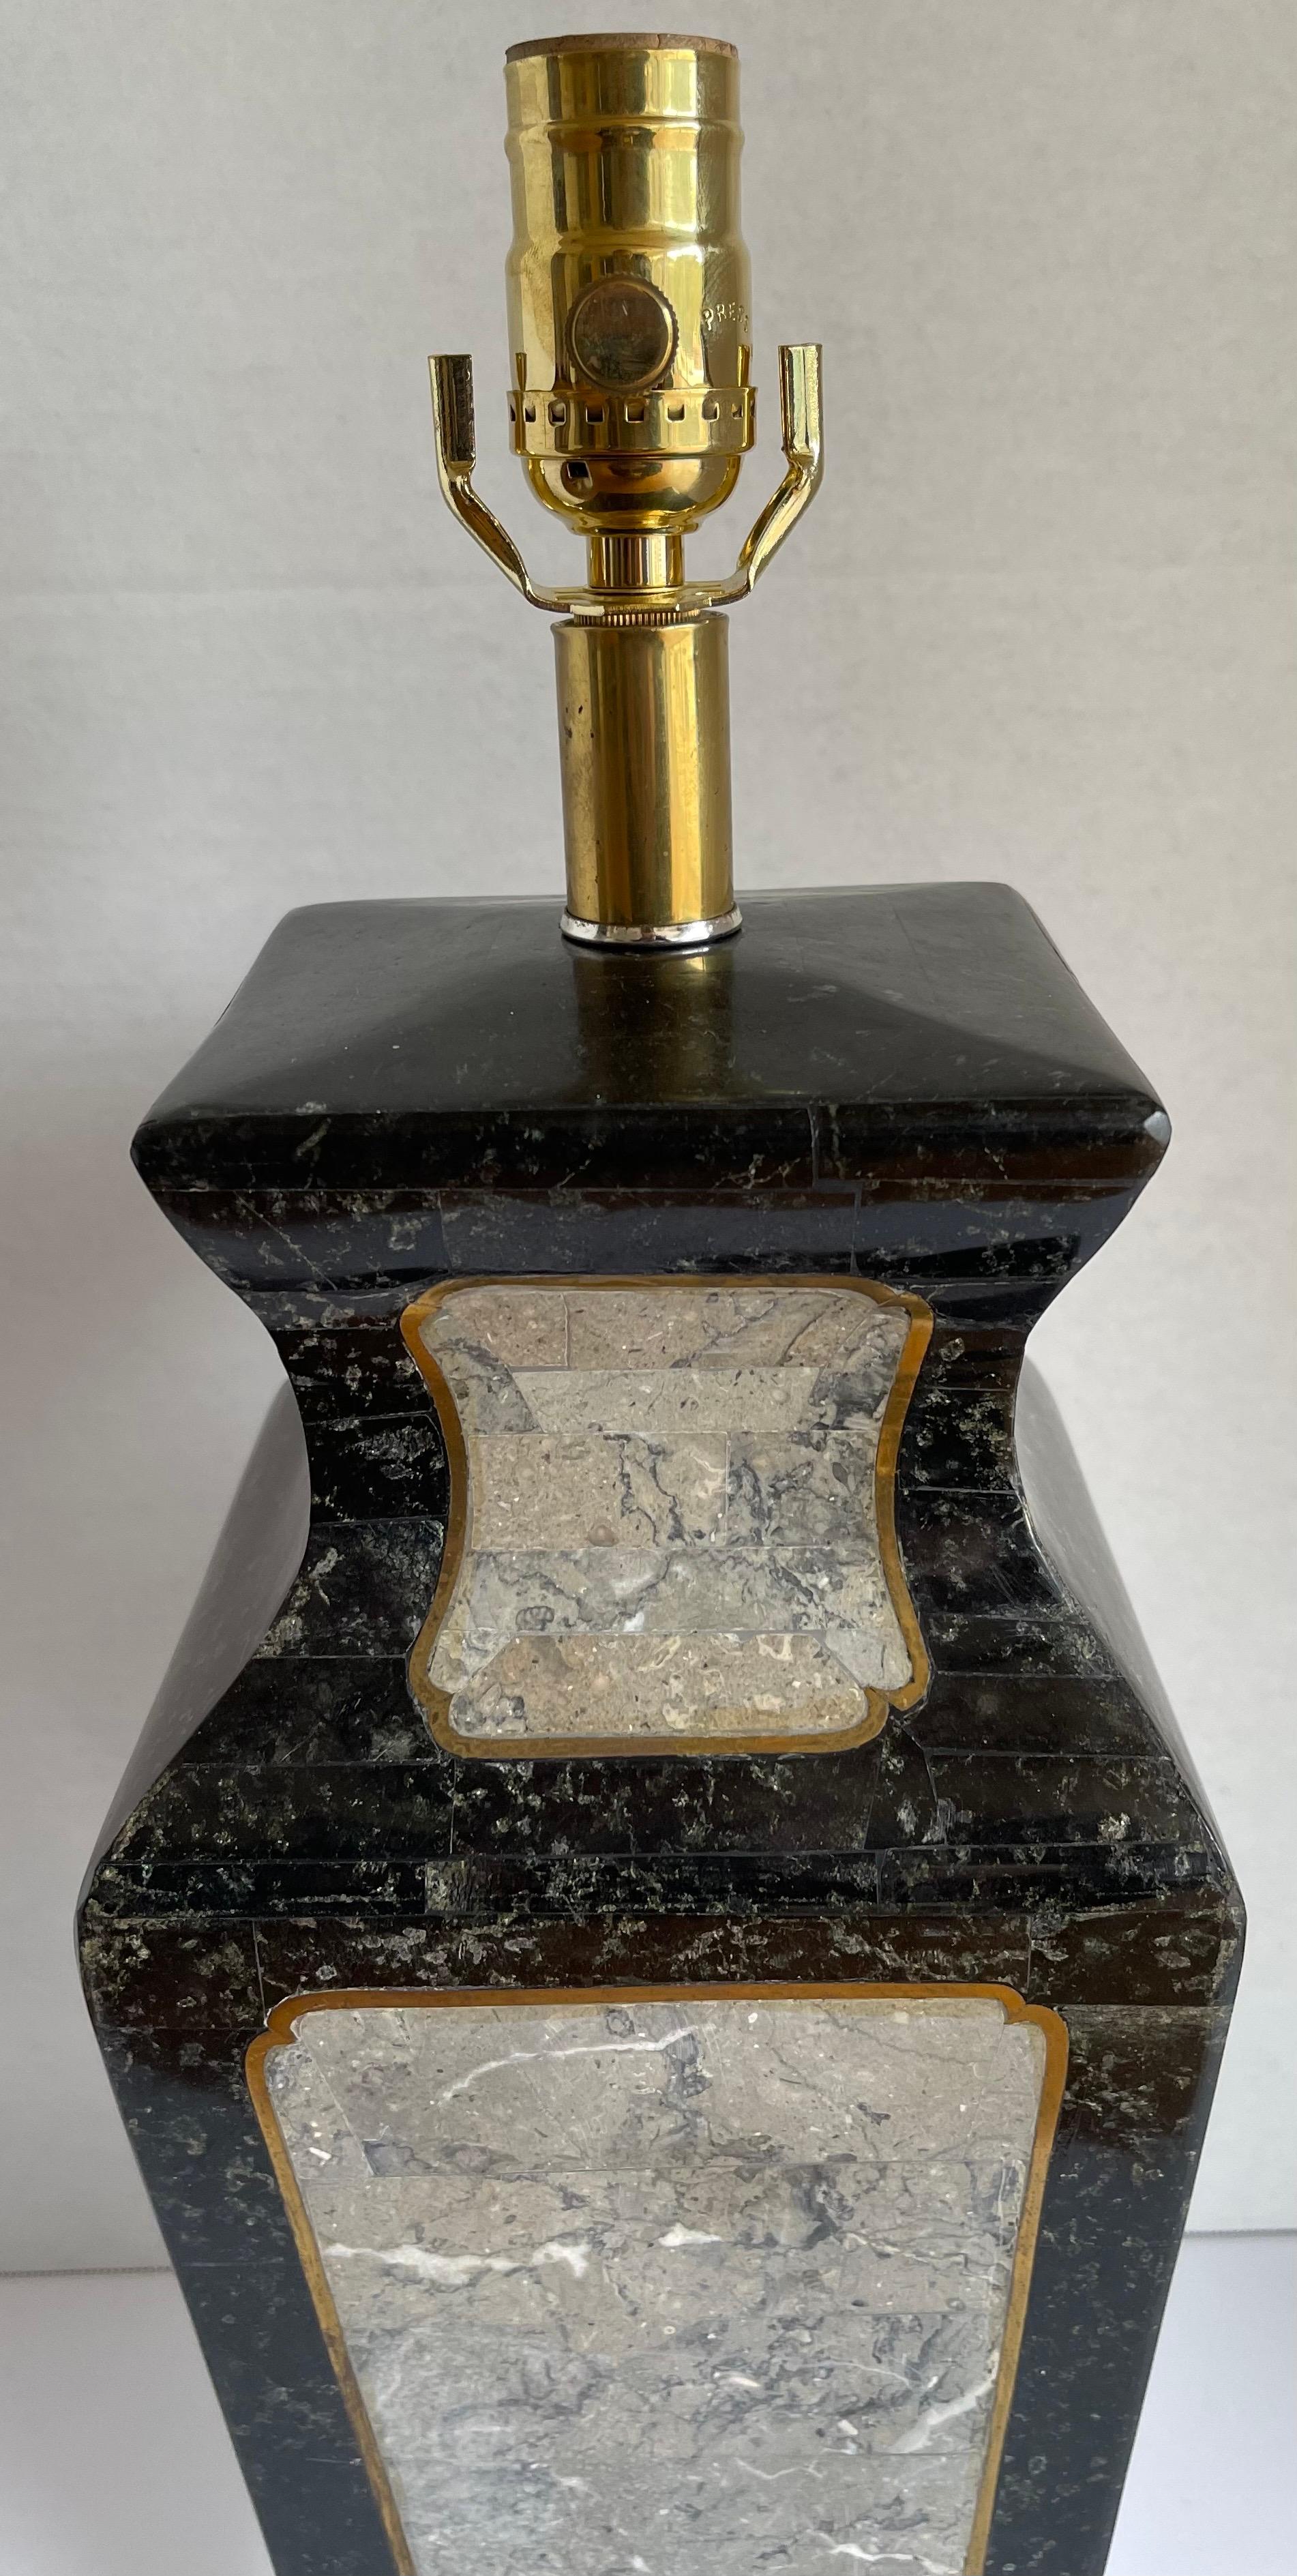 Lampe de table en pierre et laiton Maitland-Smith des années 1980. Pierre noire et grise avec incrustation de laiton. Base carrée originale en lucite avec bord biseauté. Le câblage a été refait à neuf avec une nouvelle prise en laiton. La lampe